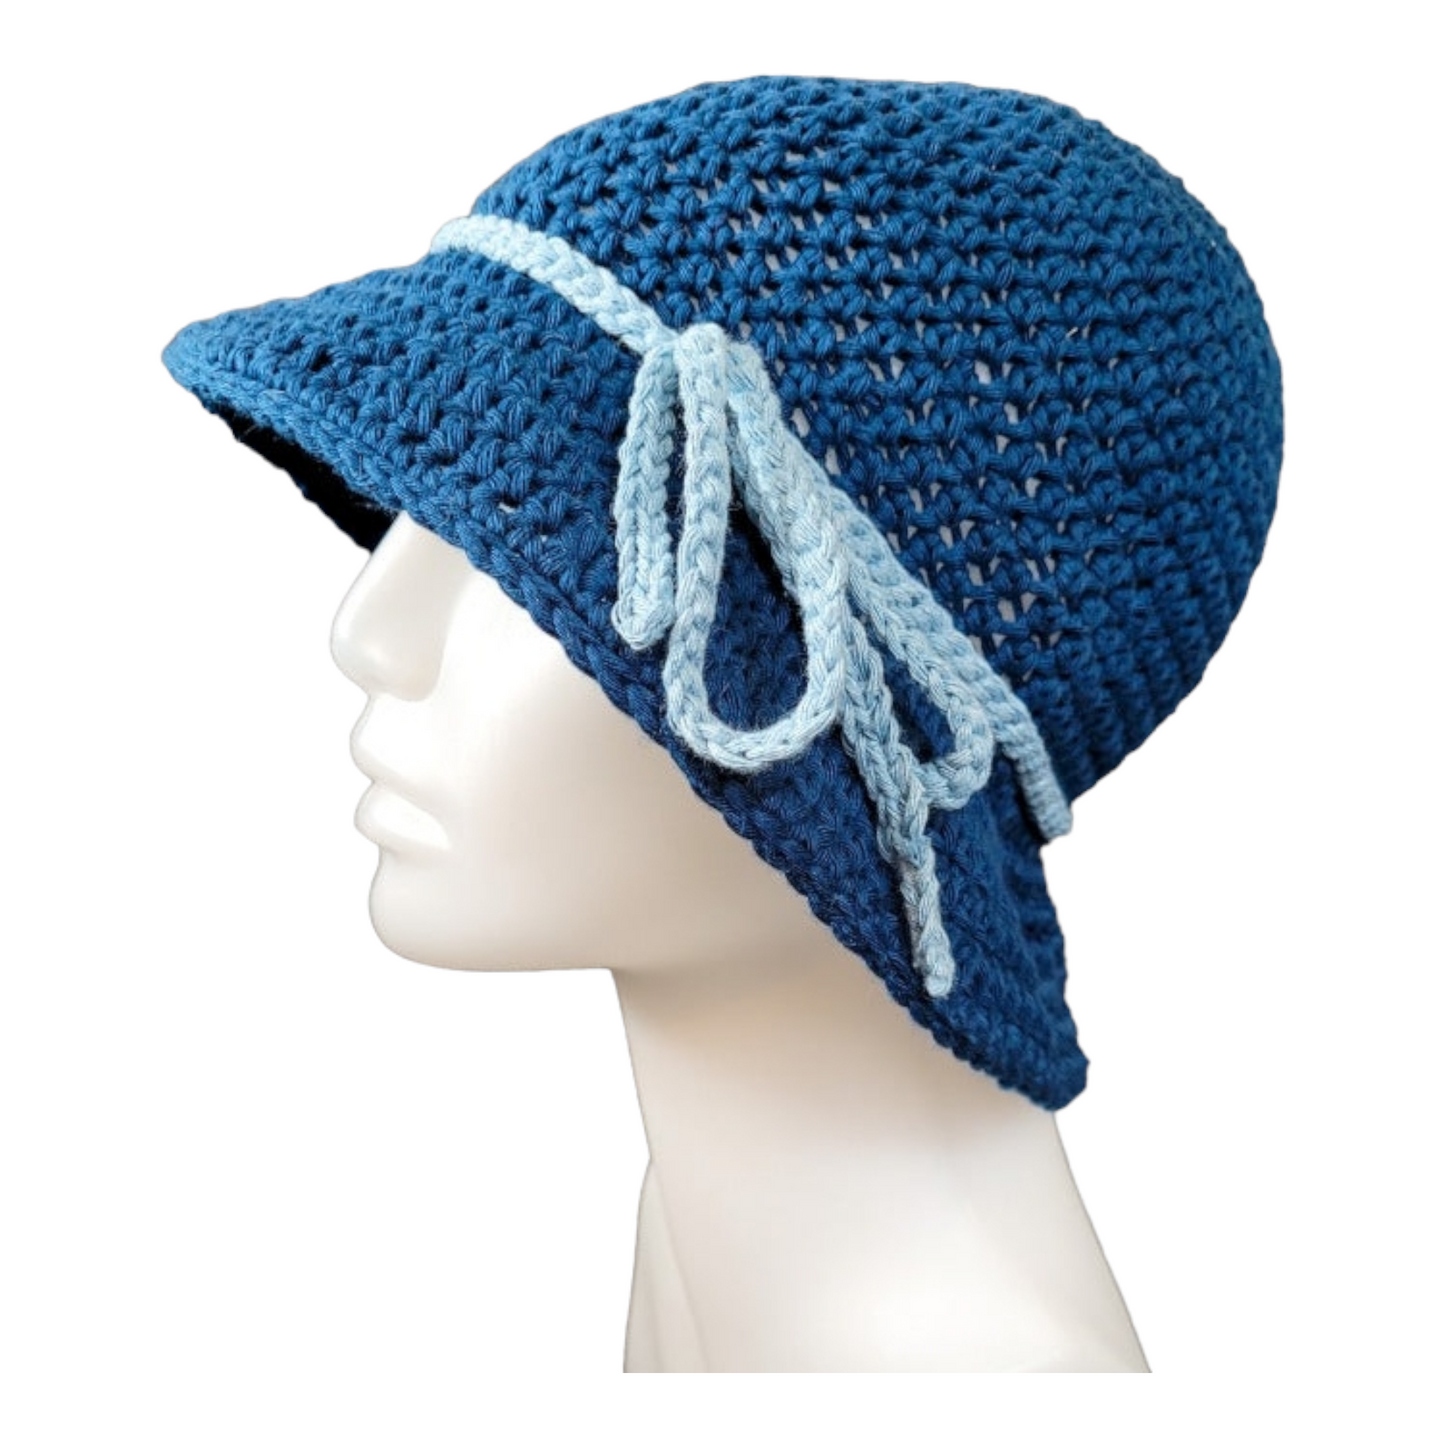 Crocheted sun hats